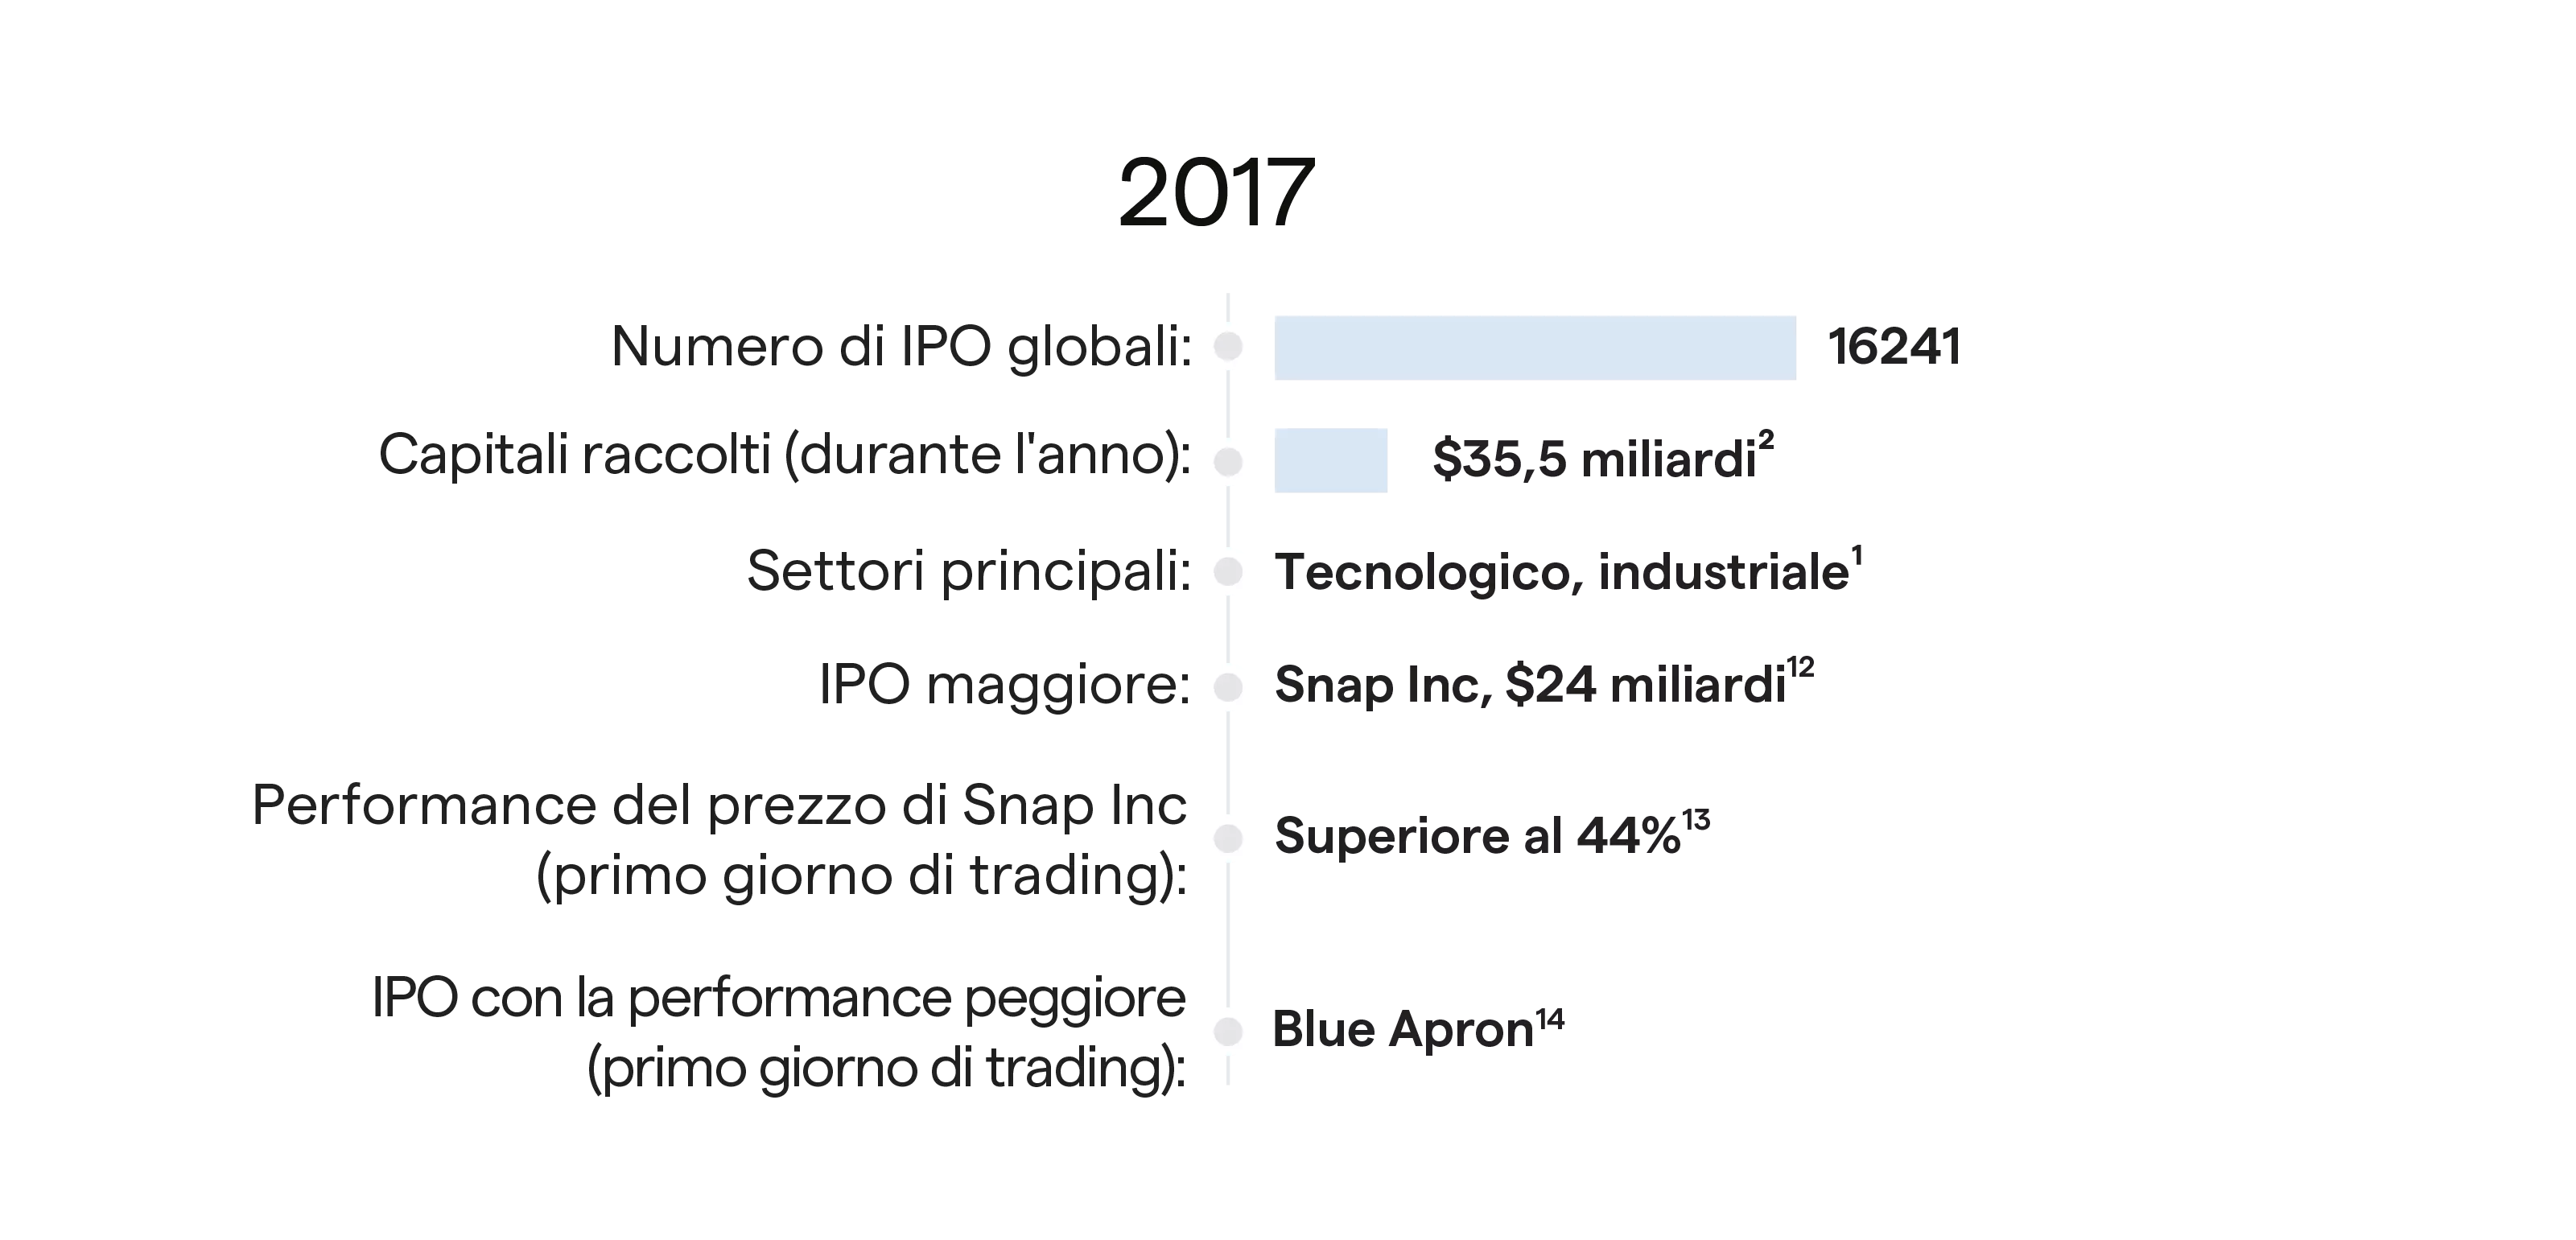 IPO performance 2017